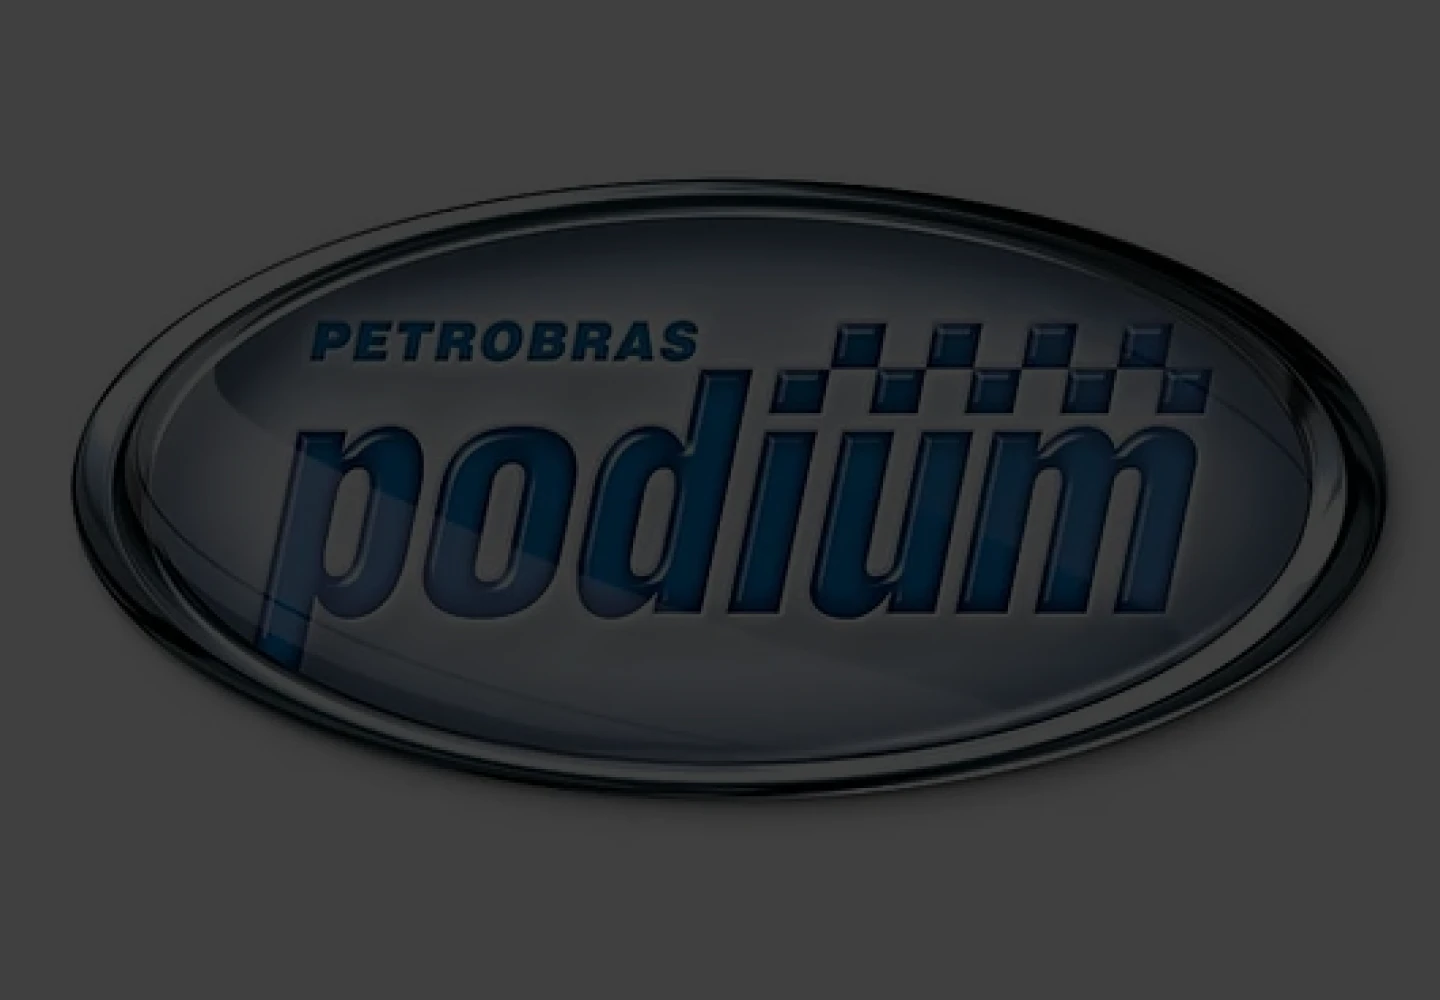 Logo of the Petrobras Podium line.